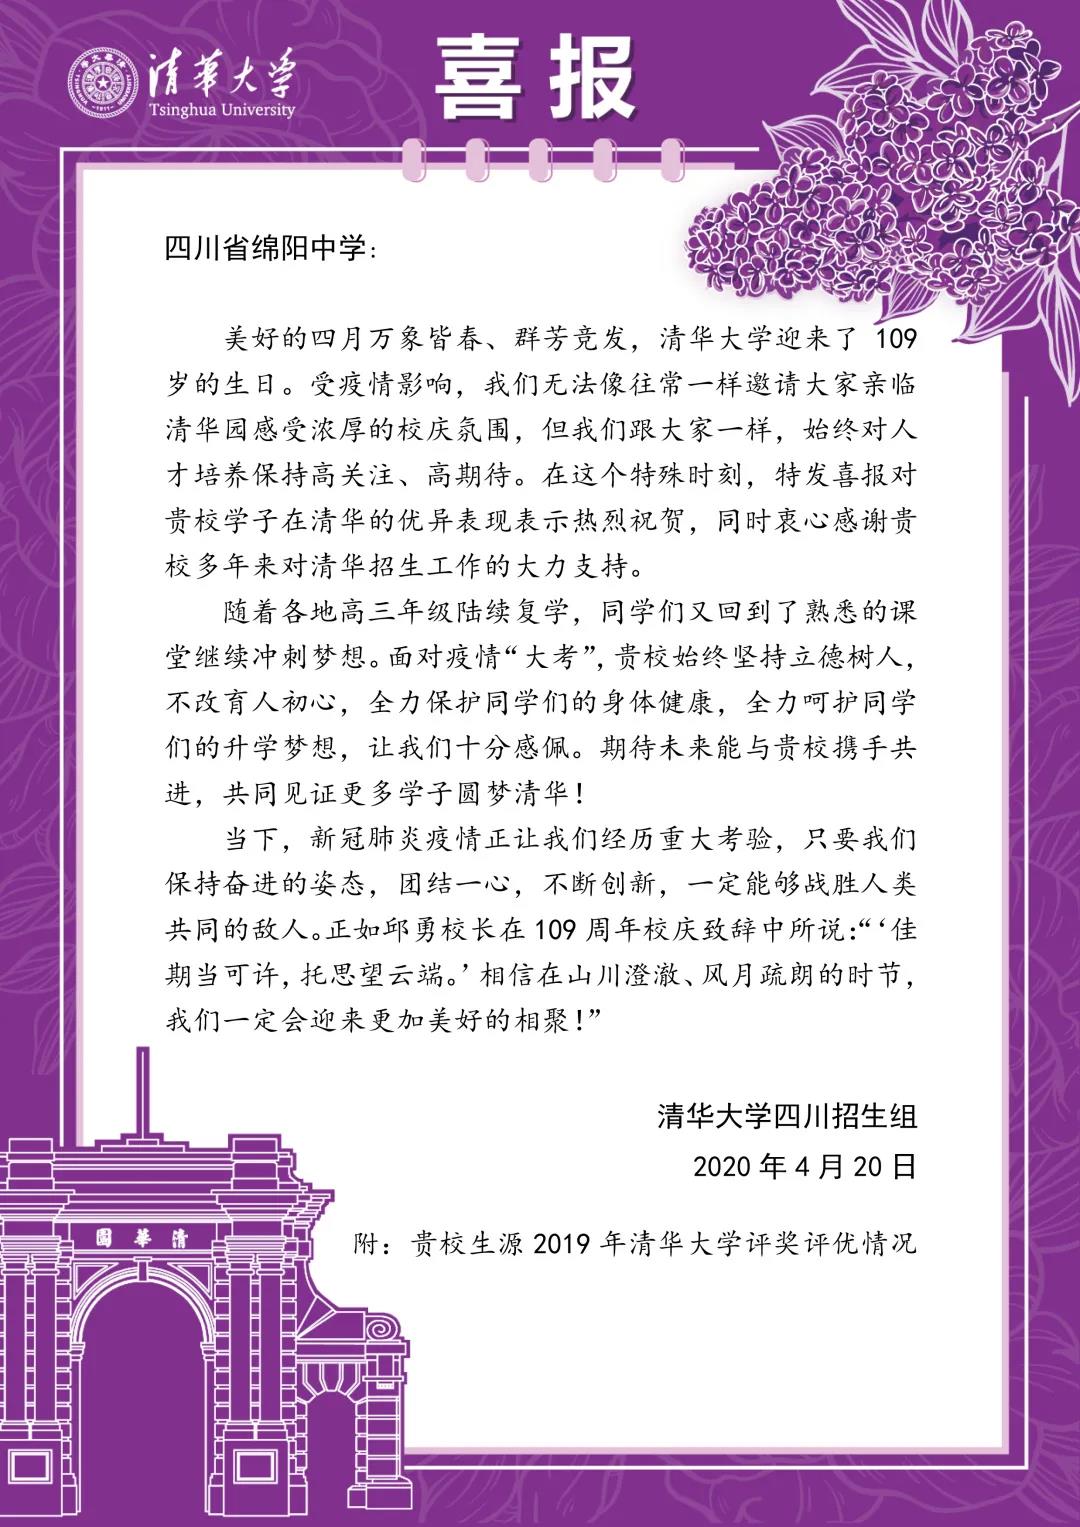 资讯丨清北加冕，捷报频传丨北京大学也向绵阳中学发来喜报